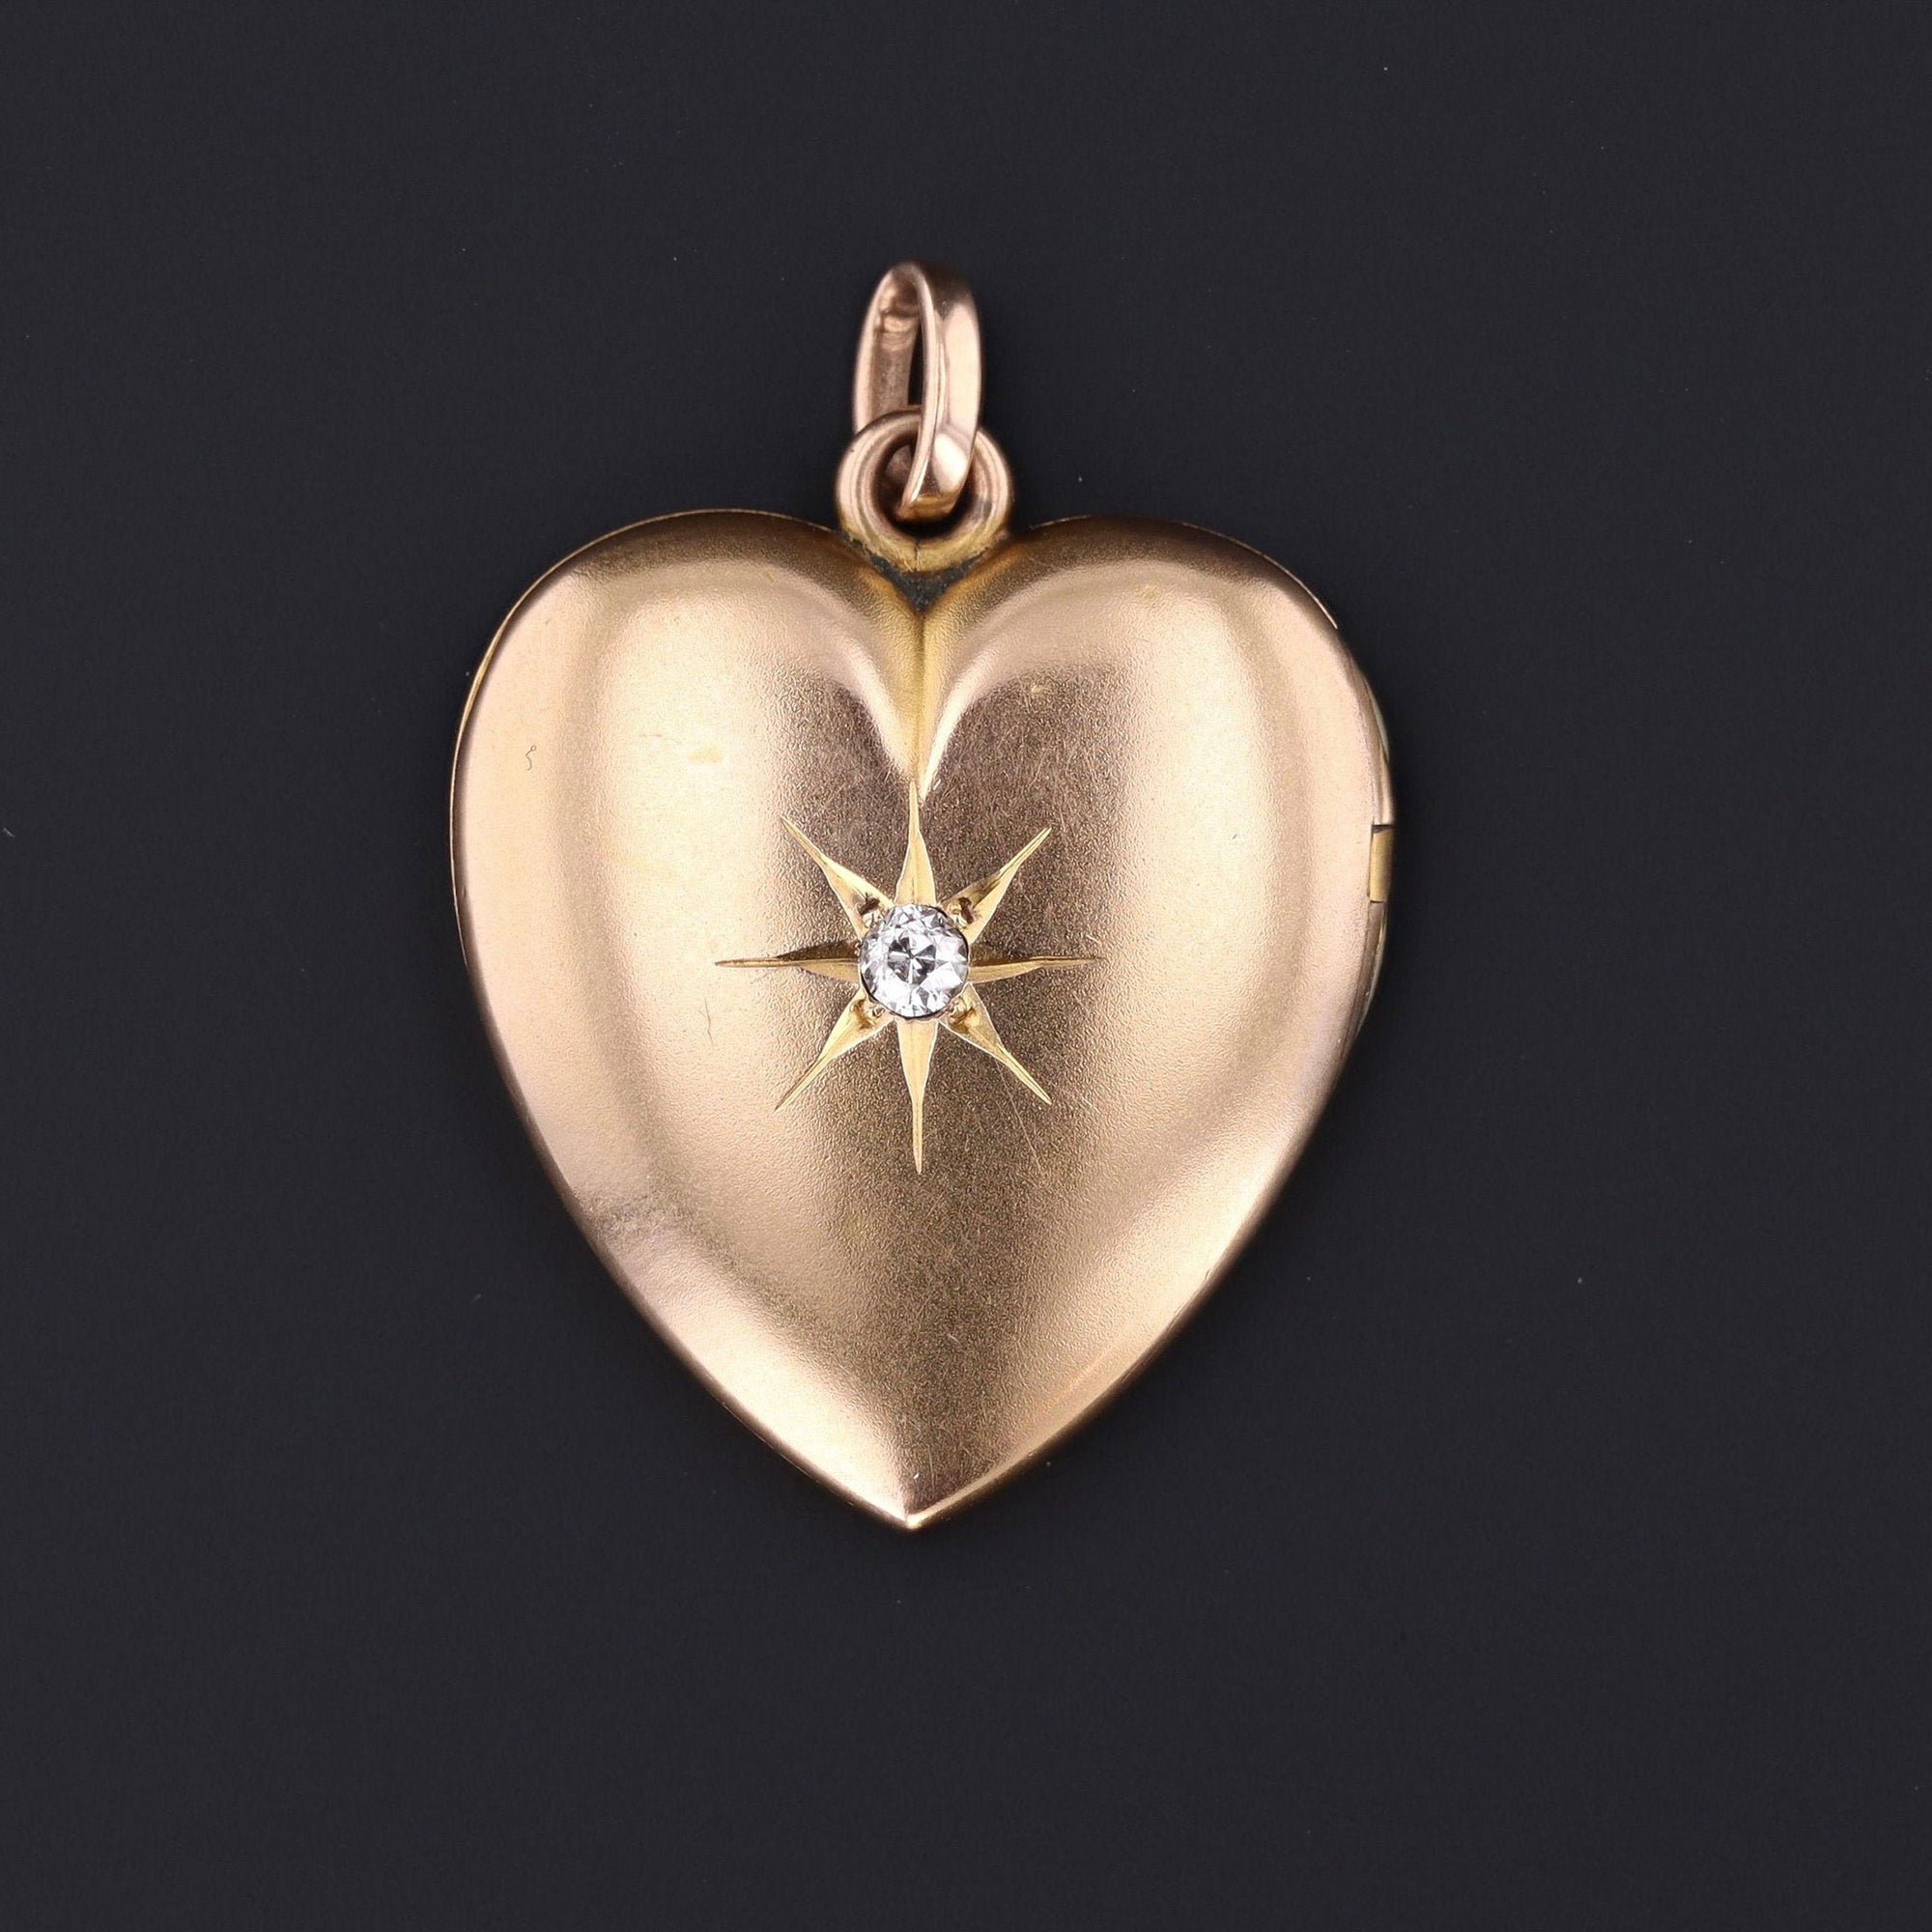 Antique Locket | Antique Heart Locket | Diamond Locket | 10k Gold Locket